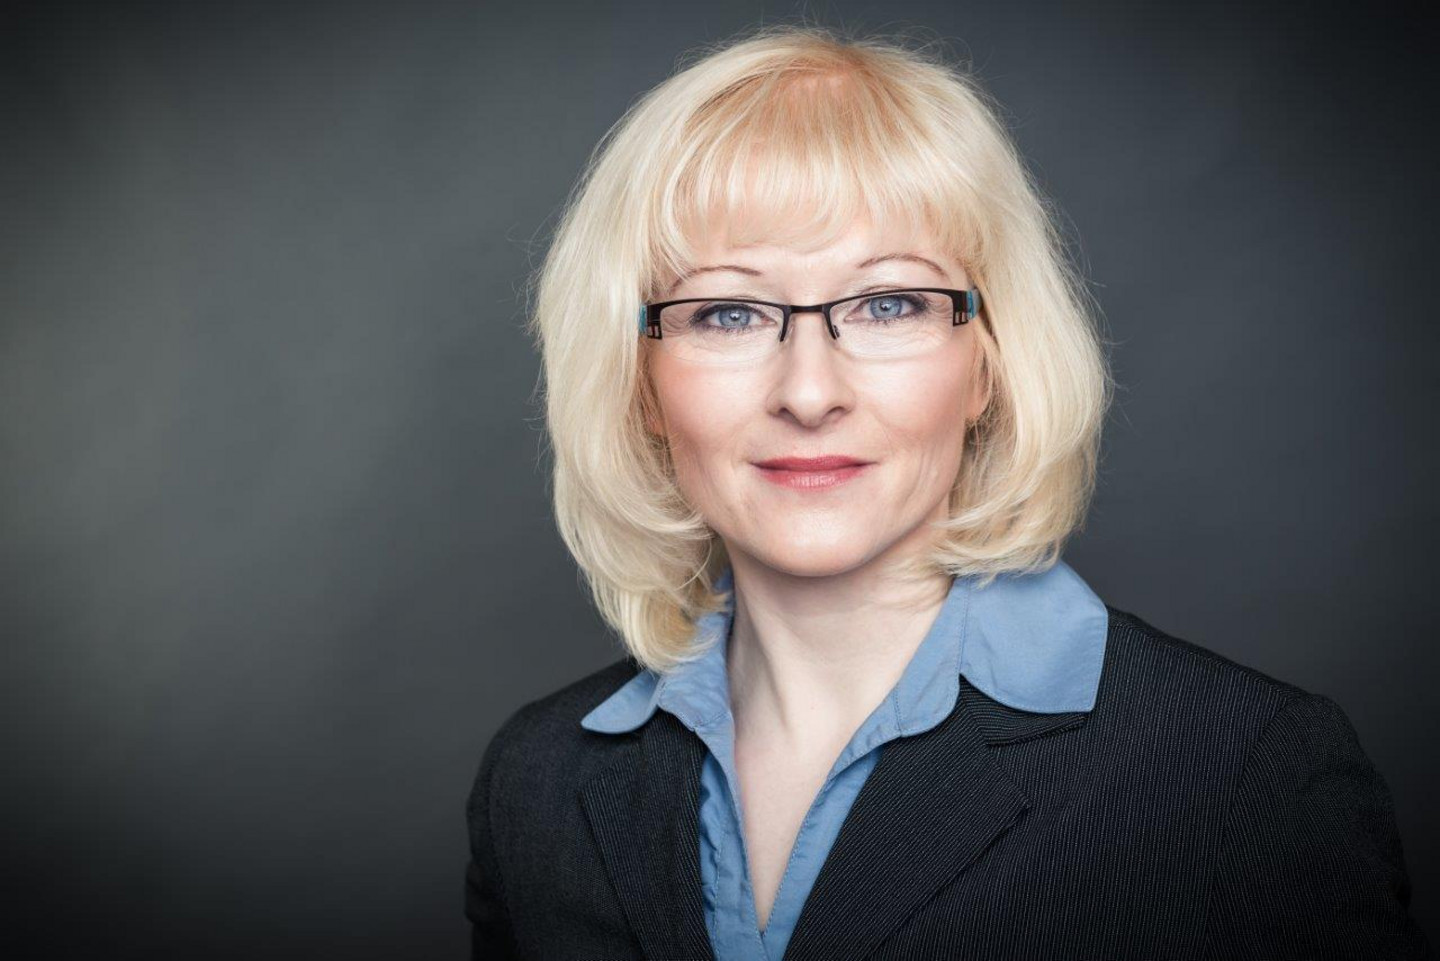 Porträt von Dr. Magdalena Spaude. Sie trägt eine Brille, hat blonde schulterlange Haare und trägt ein hellblaues Hemd.